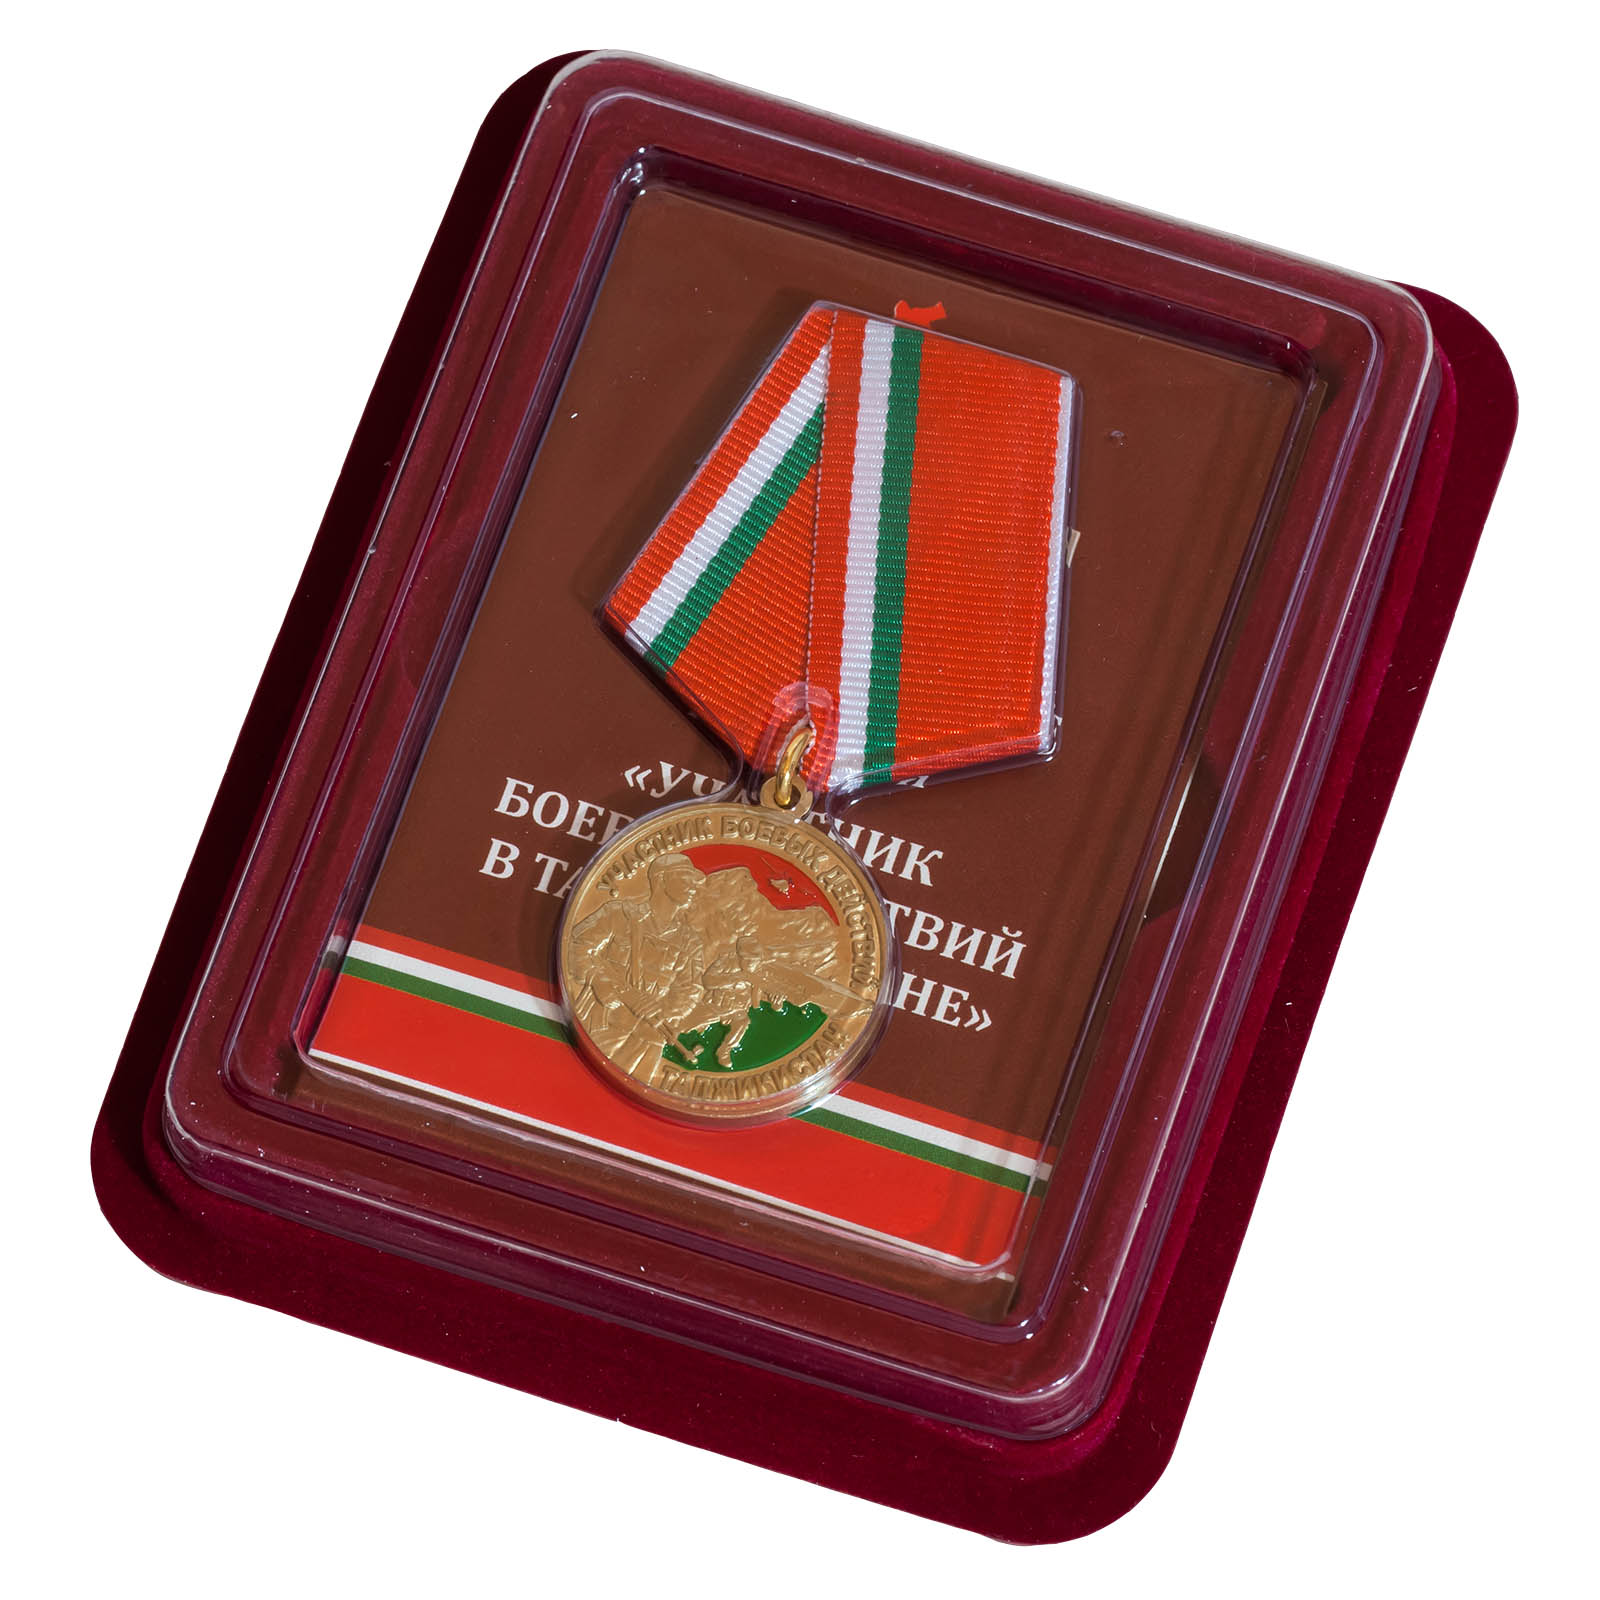 Купить медаль "Участник боевых действий в Таджикистане" в наградном футляре